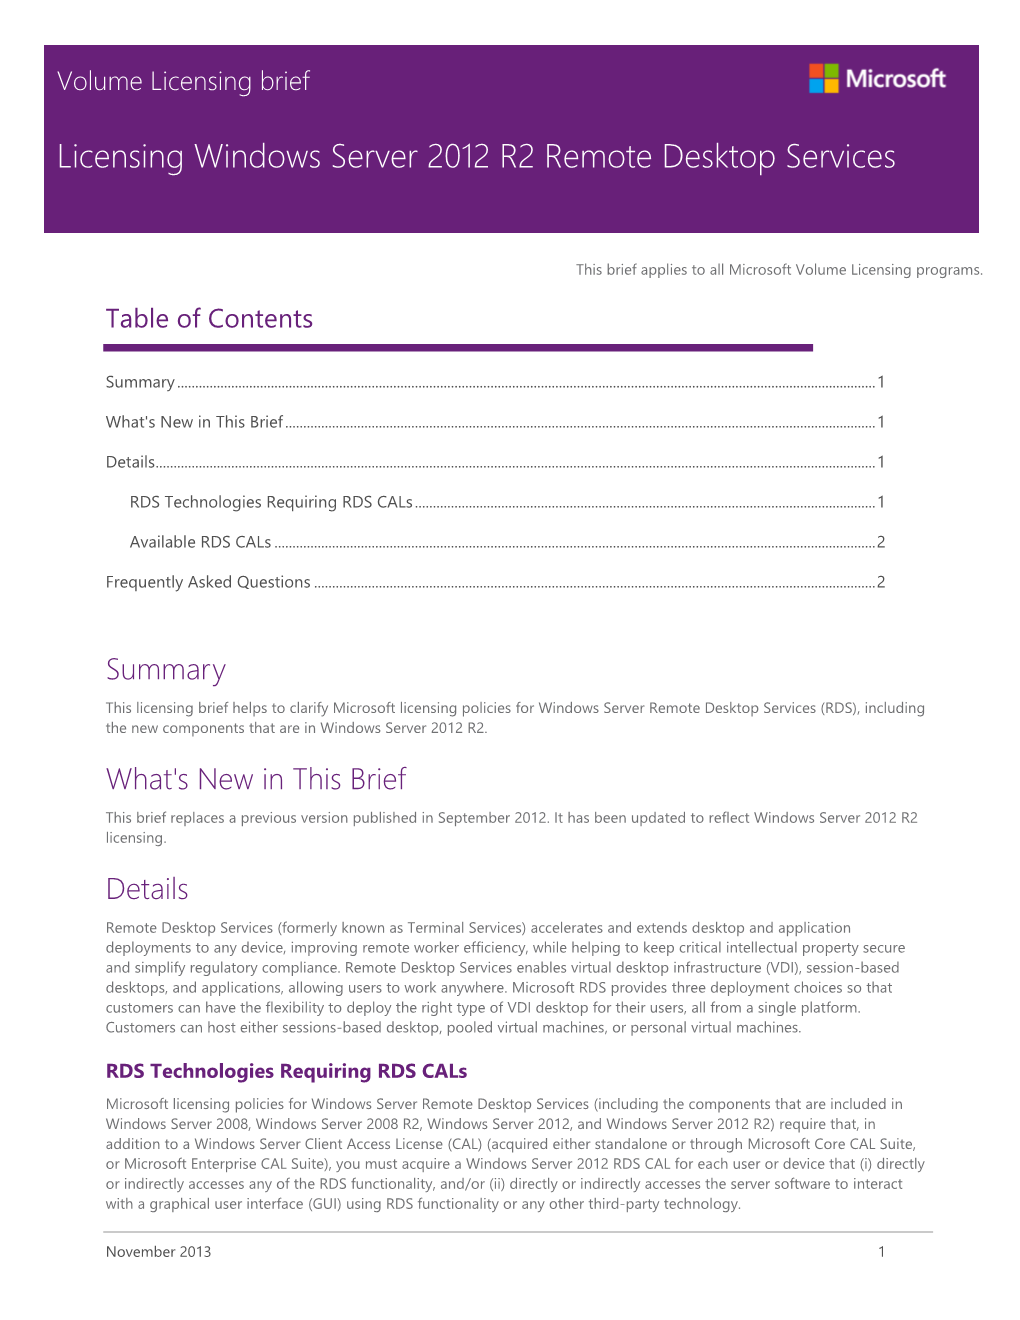 Licensing Windows Server 2012 R2 Remote Desktop Services